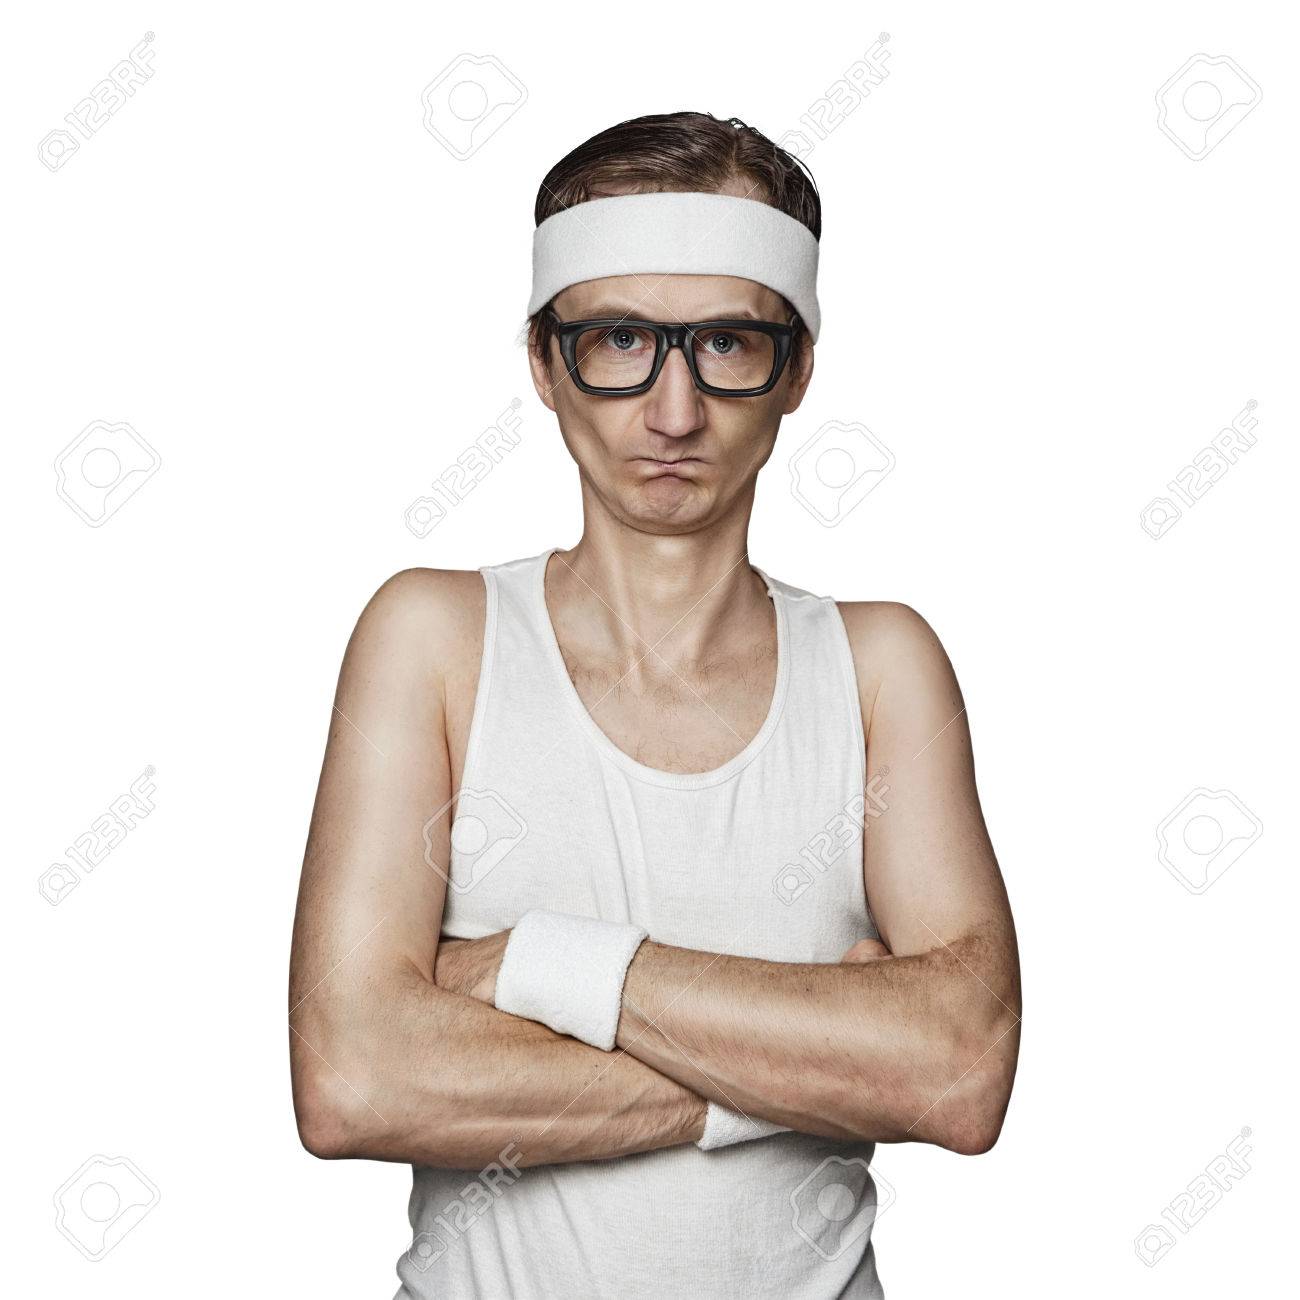 63299889-funny-sport-nerd-pretending-tough-guy-isolated-on-white-background.jpg